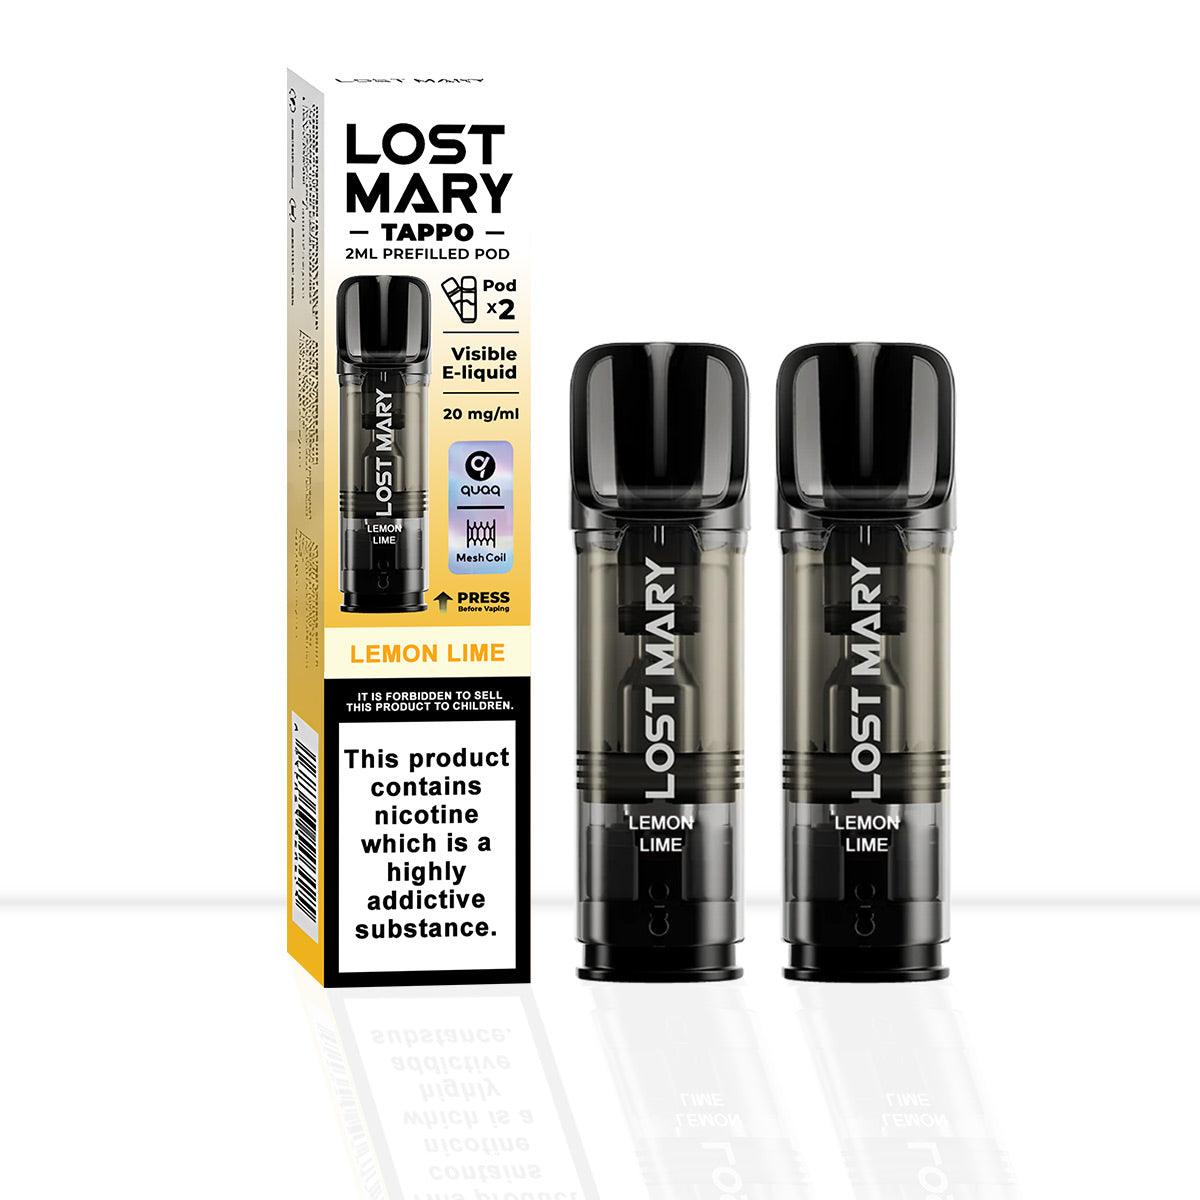 Lost Mary Tappo Lemon Lime Vape Pods - Pod & Refills